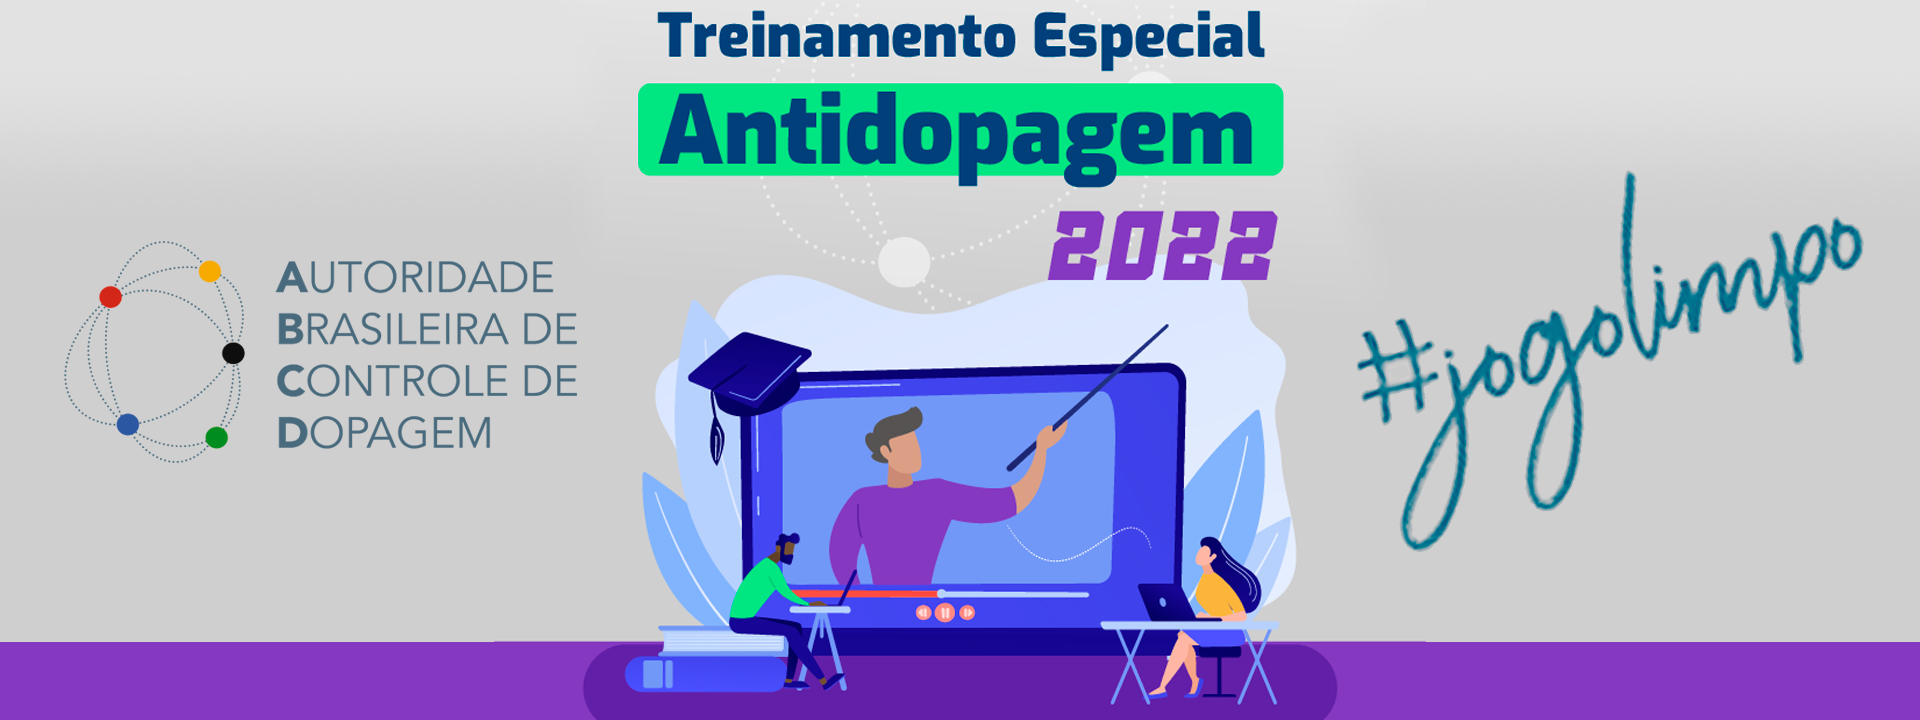 Comunidade Esportiva de todo o país poderá participar do Treinamento Especial Antidopagem 2022 